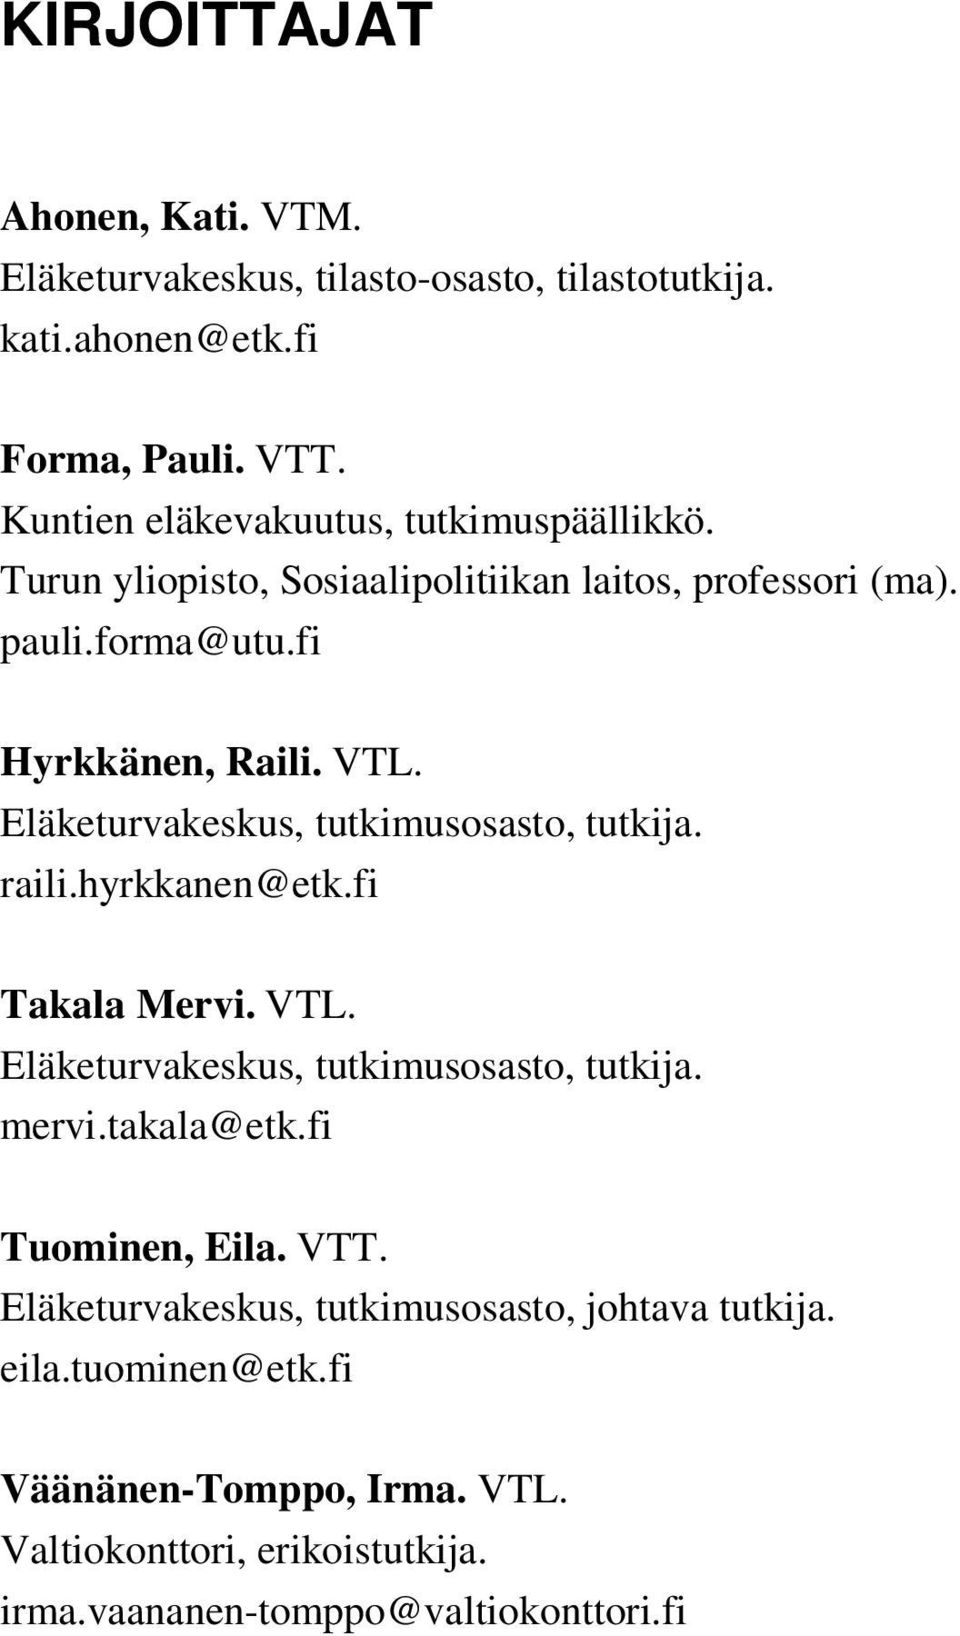 Eläketurvakeskus, tutkimusosasto, tutkija. raili.hyrkkanen@etk.fi Takala Mervi. VTL. Eläketurvakeskus, tutkimusosasto, tutkija. mervi.takala@etk.